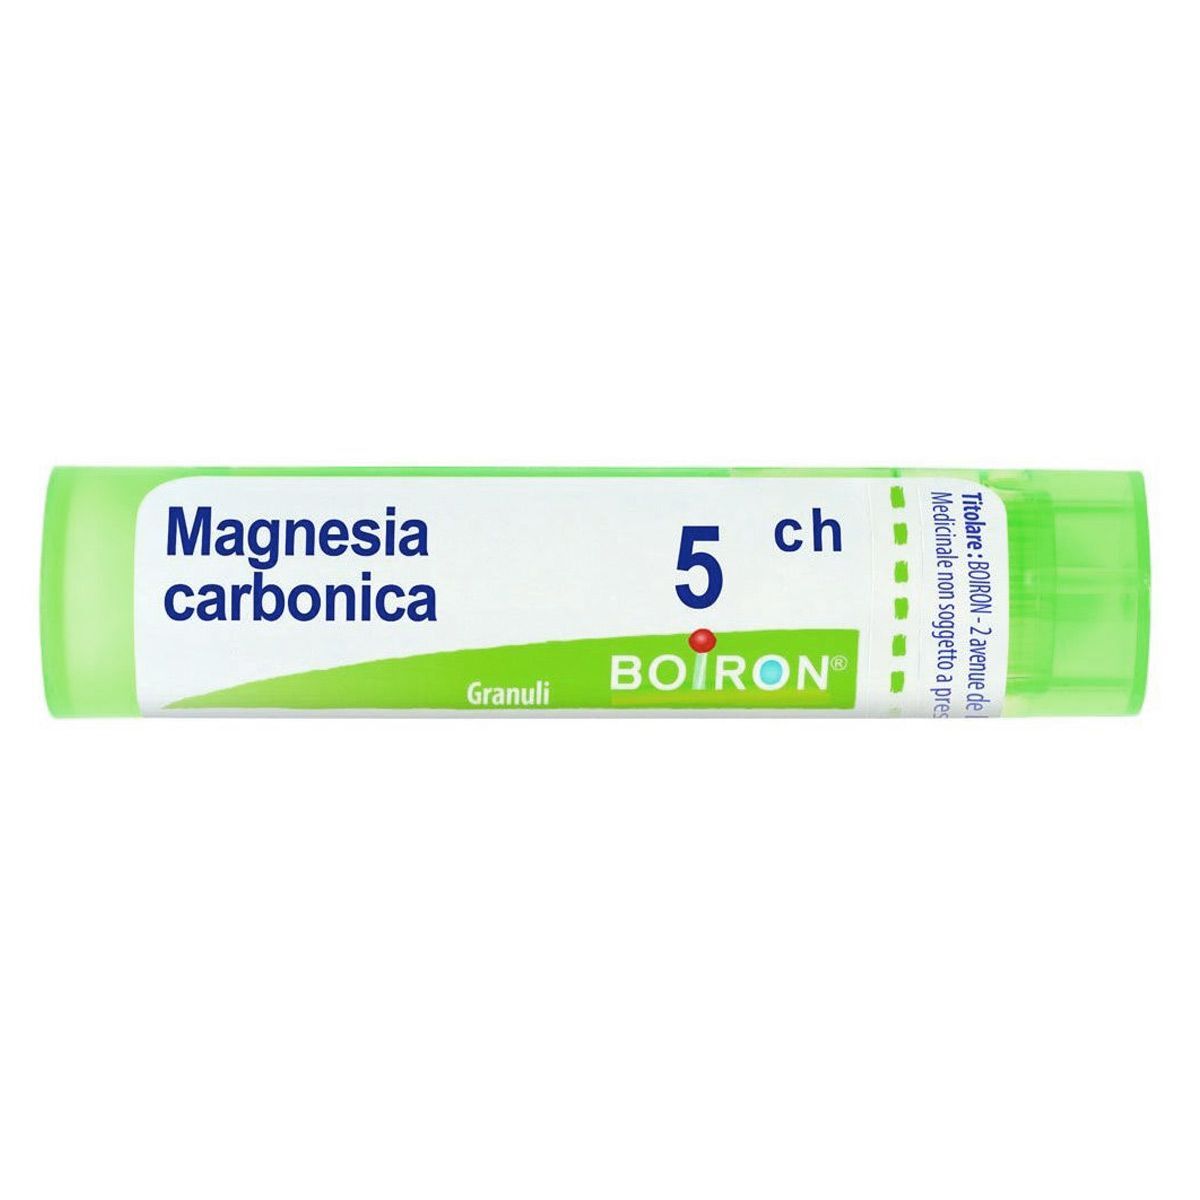 Boiron Magnesia Carbonica 5ch 80 Granuli Contenitore Multidose